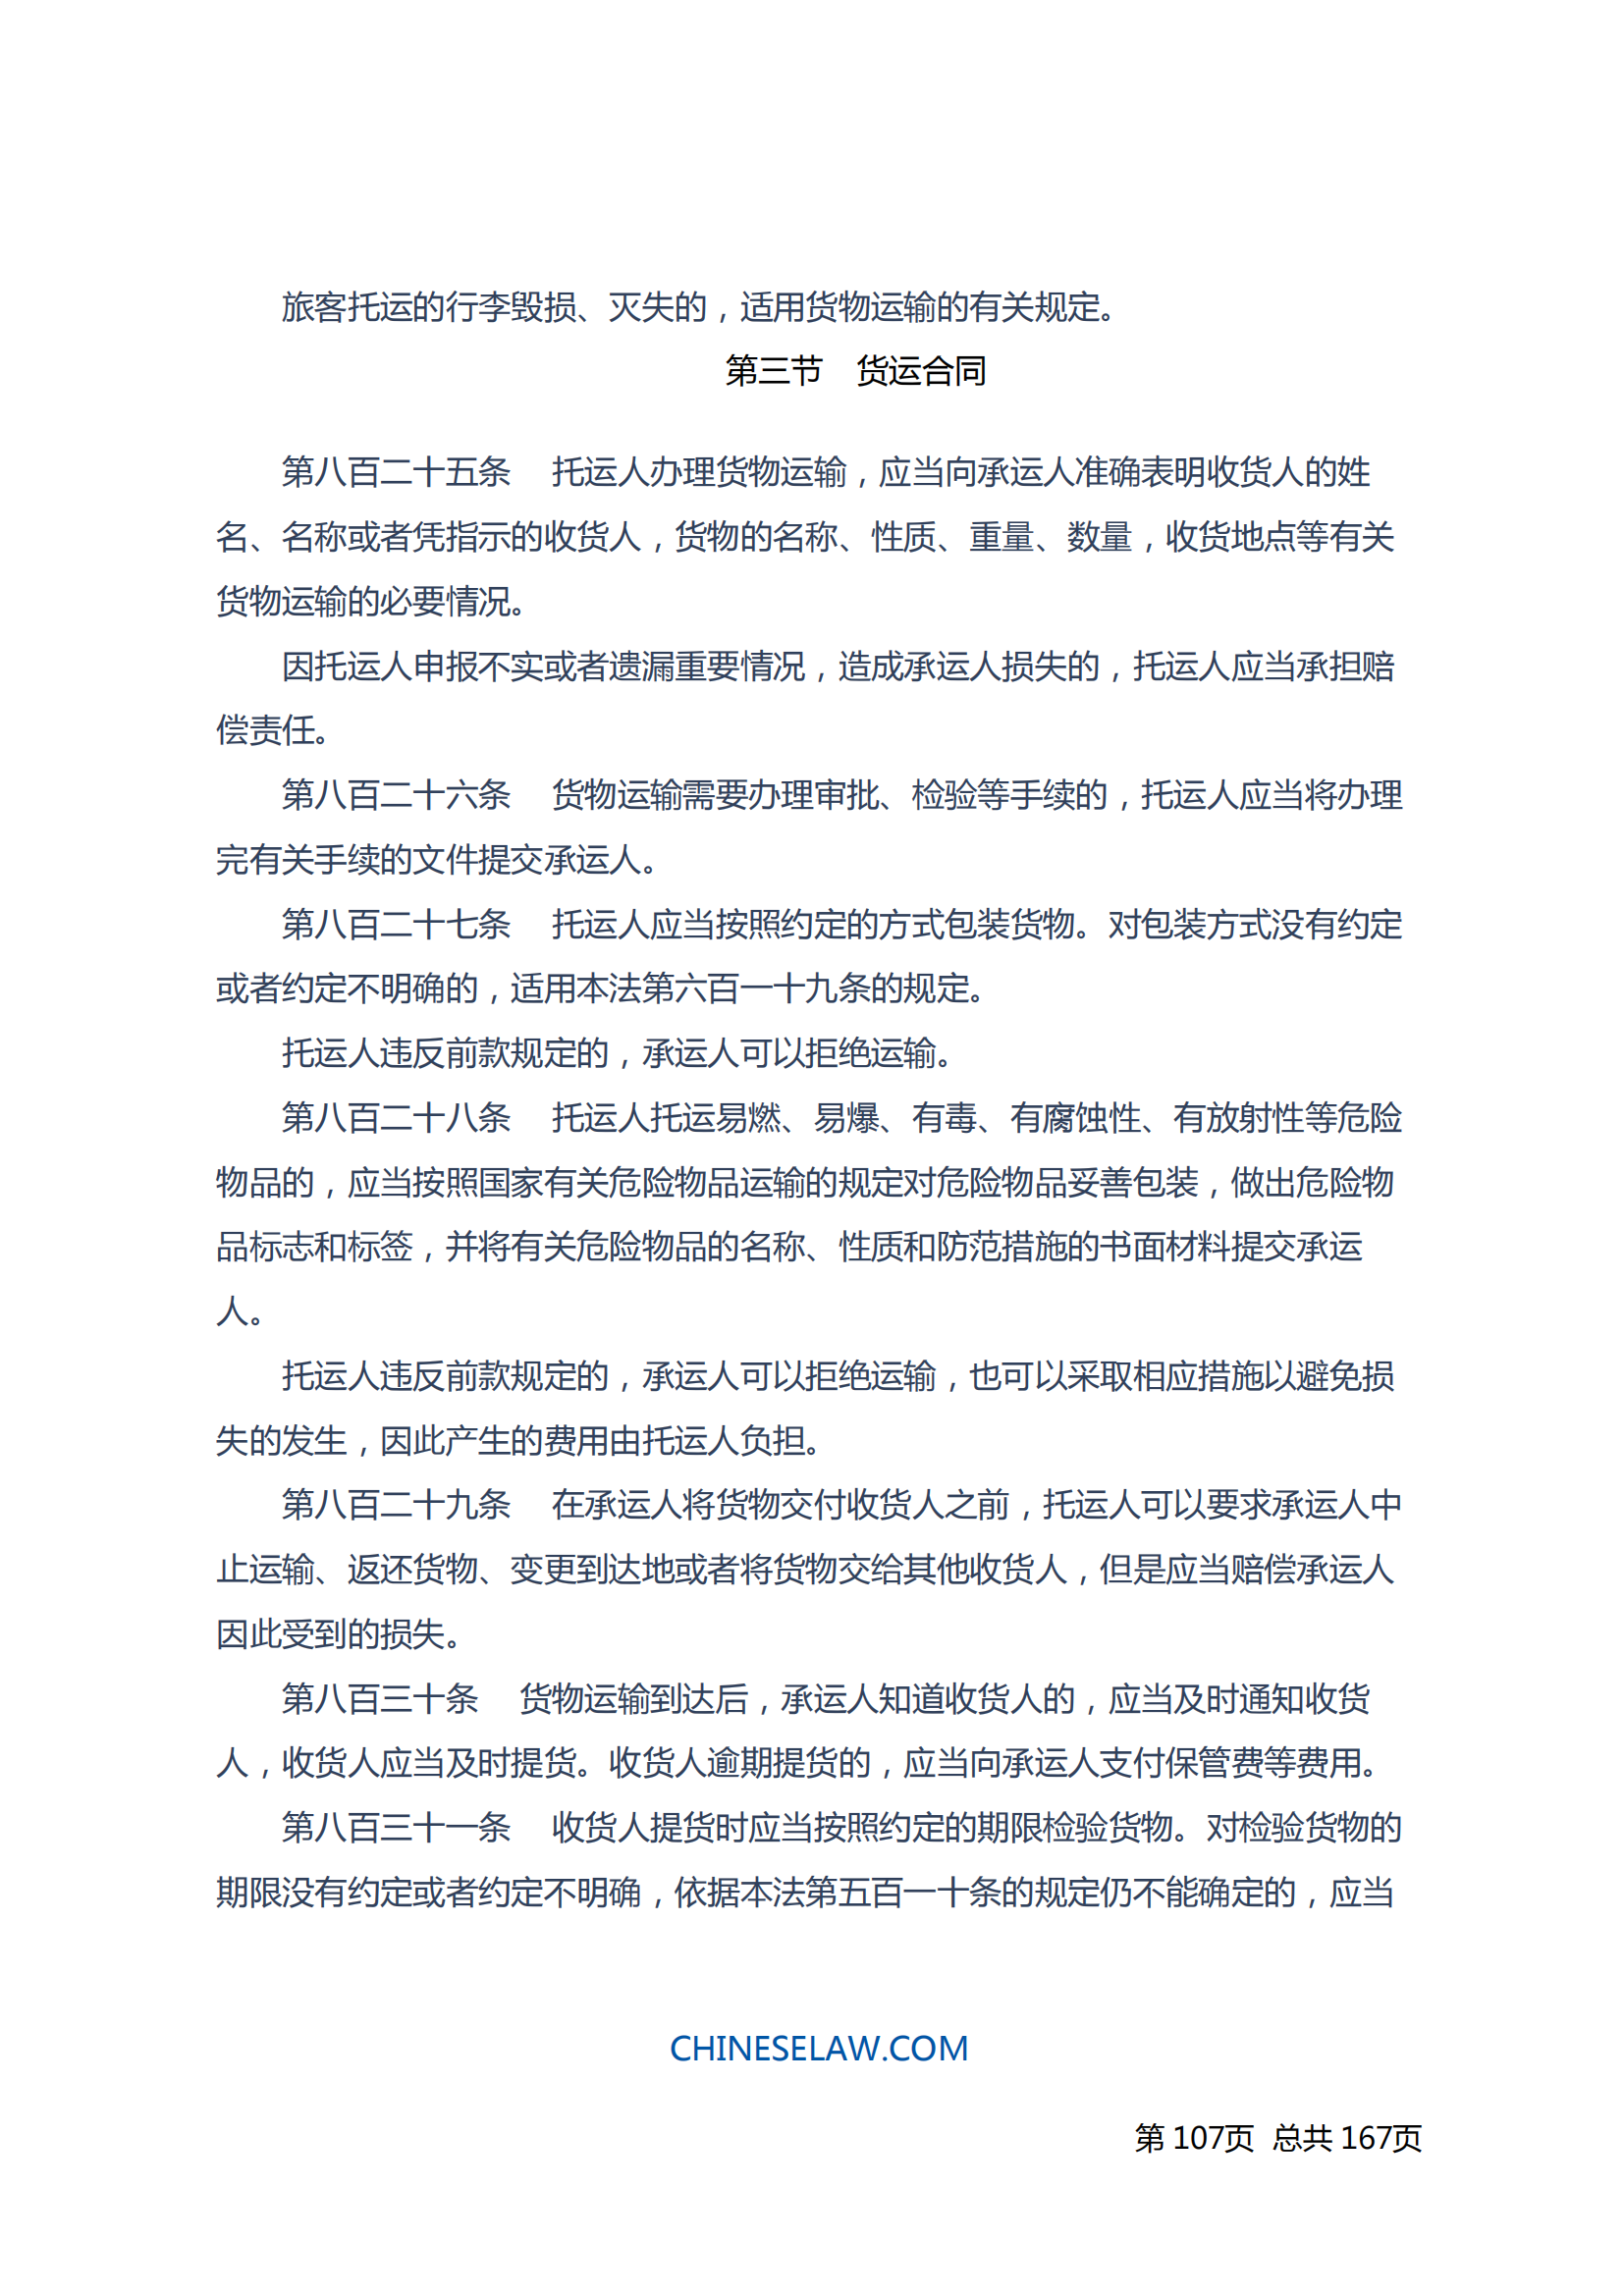 中华人民共和国民法典_106